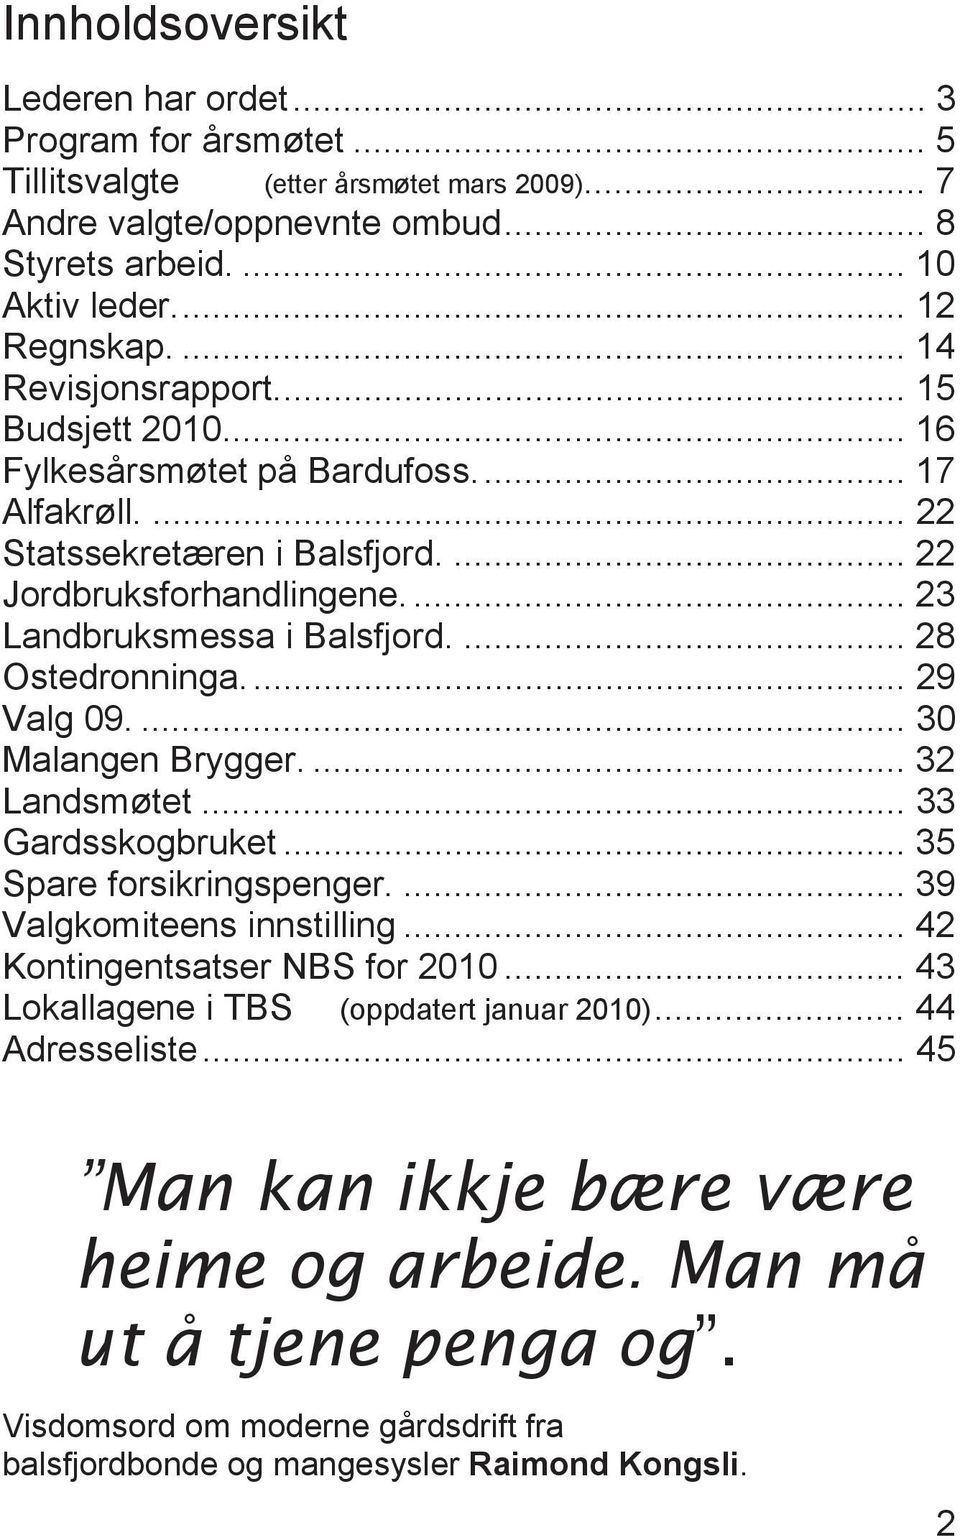 ... 28 Ostedronninga... 29 Valg 09.... 30 Malangen Brygger.... 32 Landsmøtet... 33 Gardsskogbruket... 35 Spare forsikringspenger.... 39 Valgkomiteens innstilling... 42 Kontingentsatser NBS for 2010.